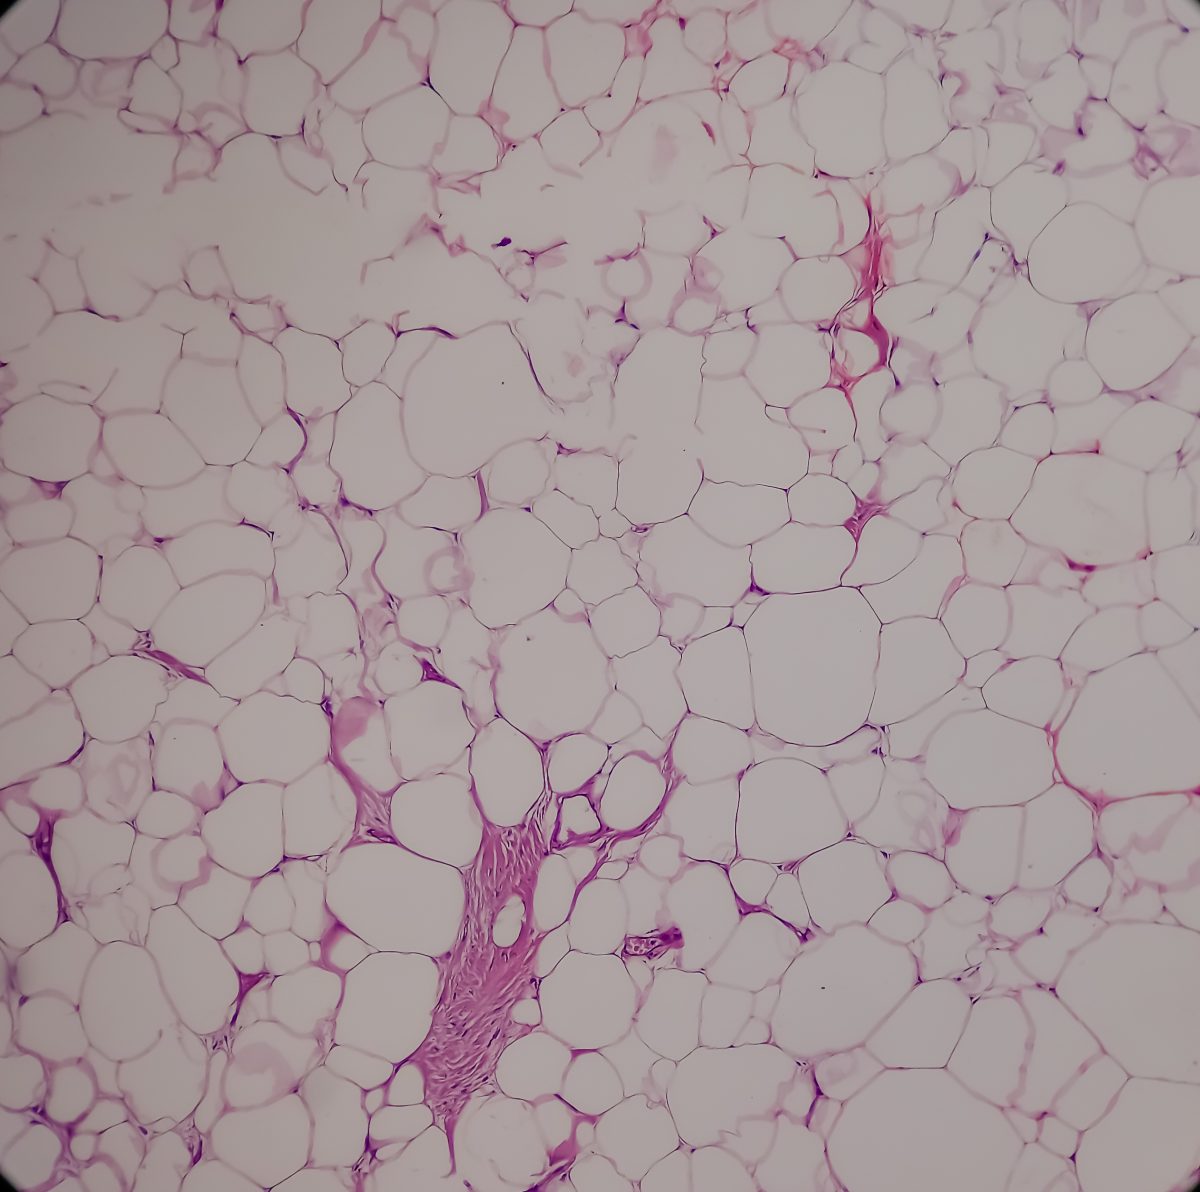 Vetcellen onder de microscoop.